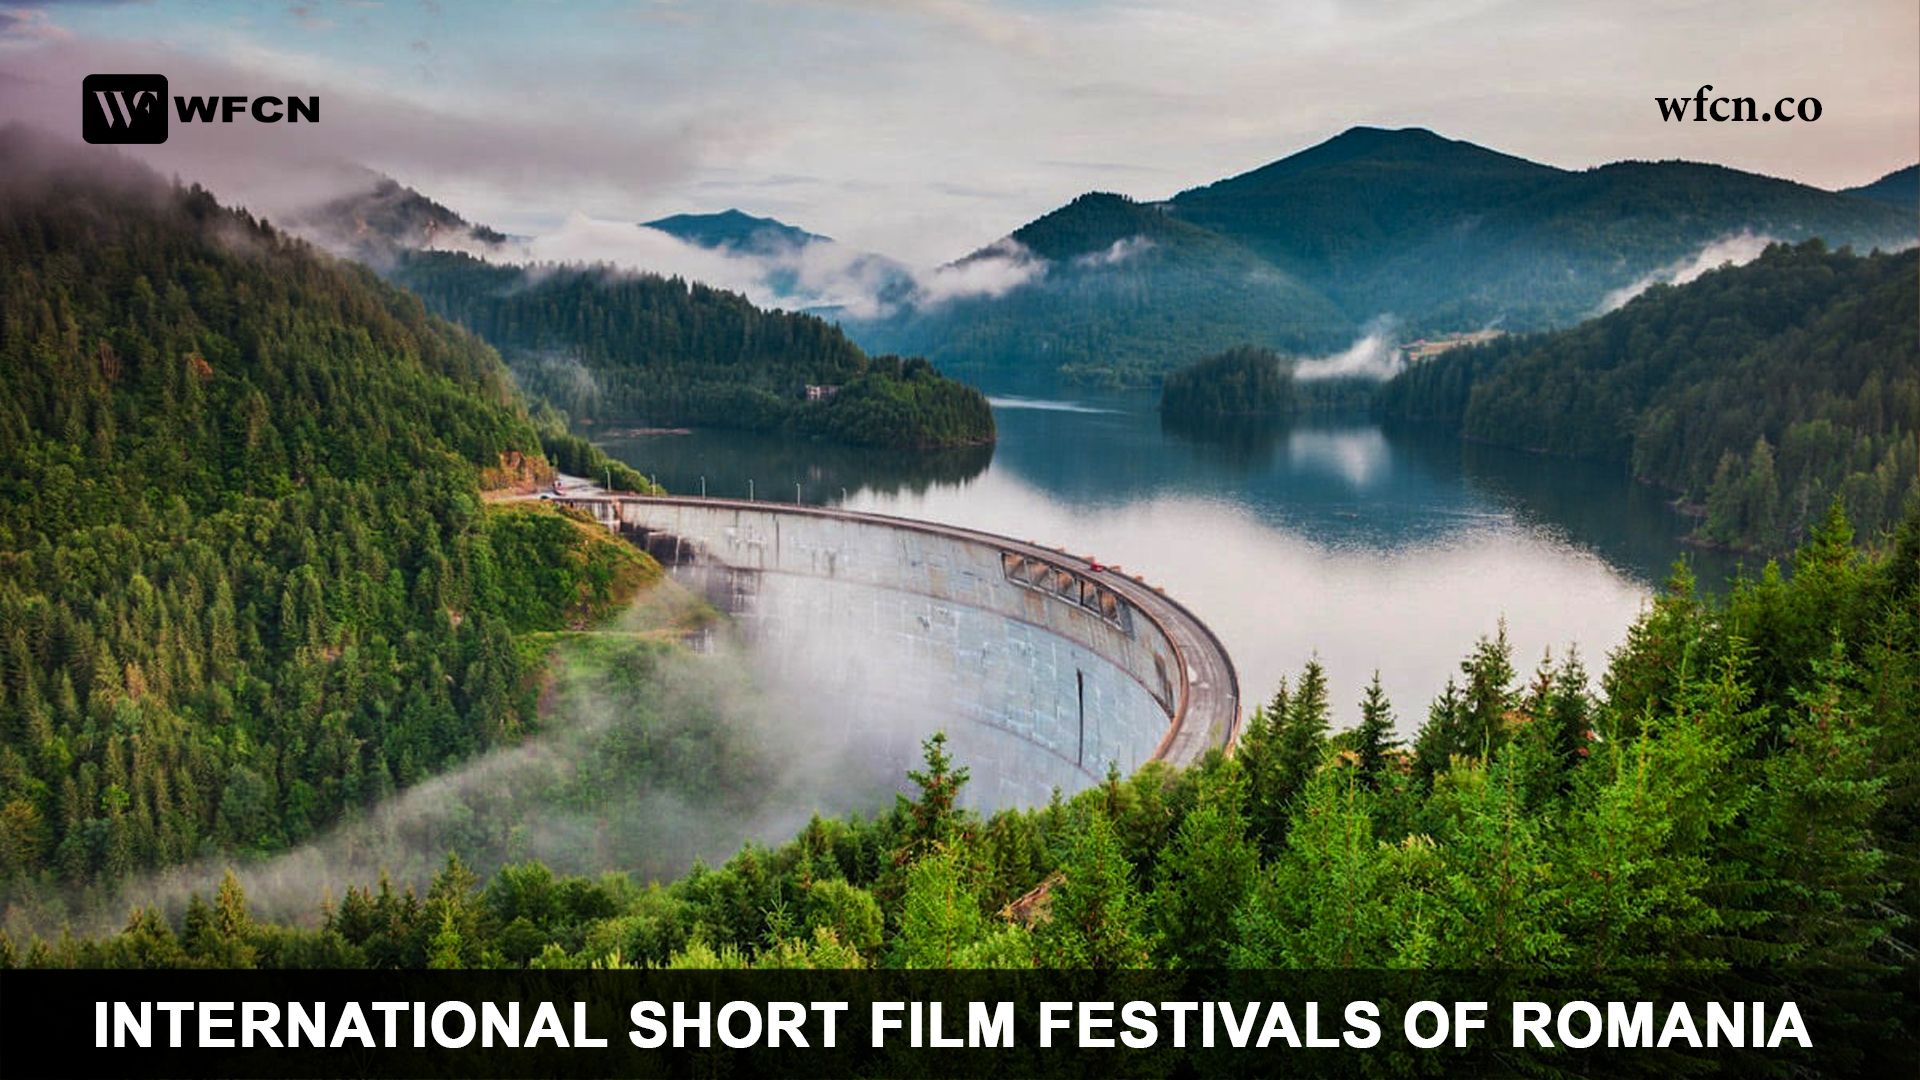 International Short Film Festivals of Romania